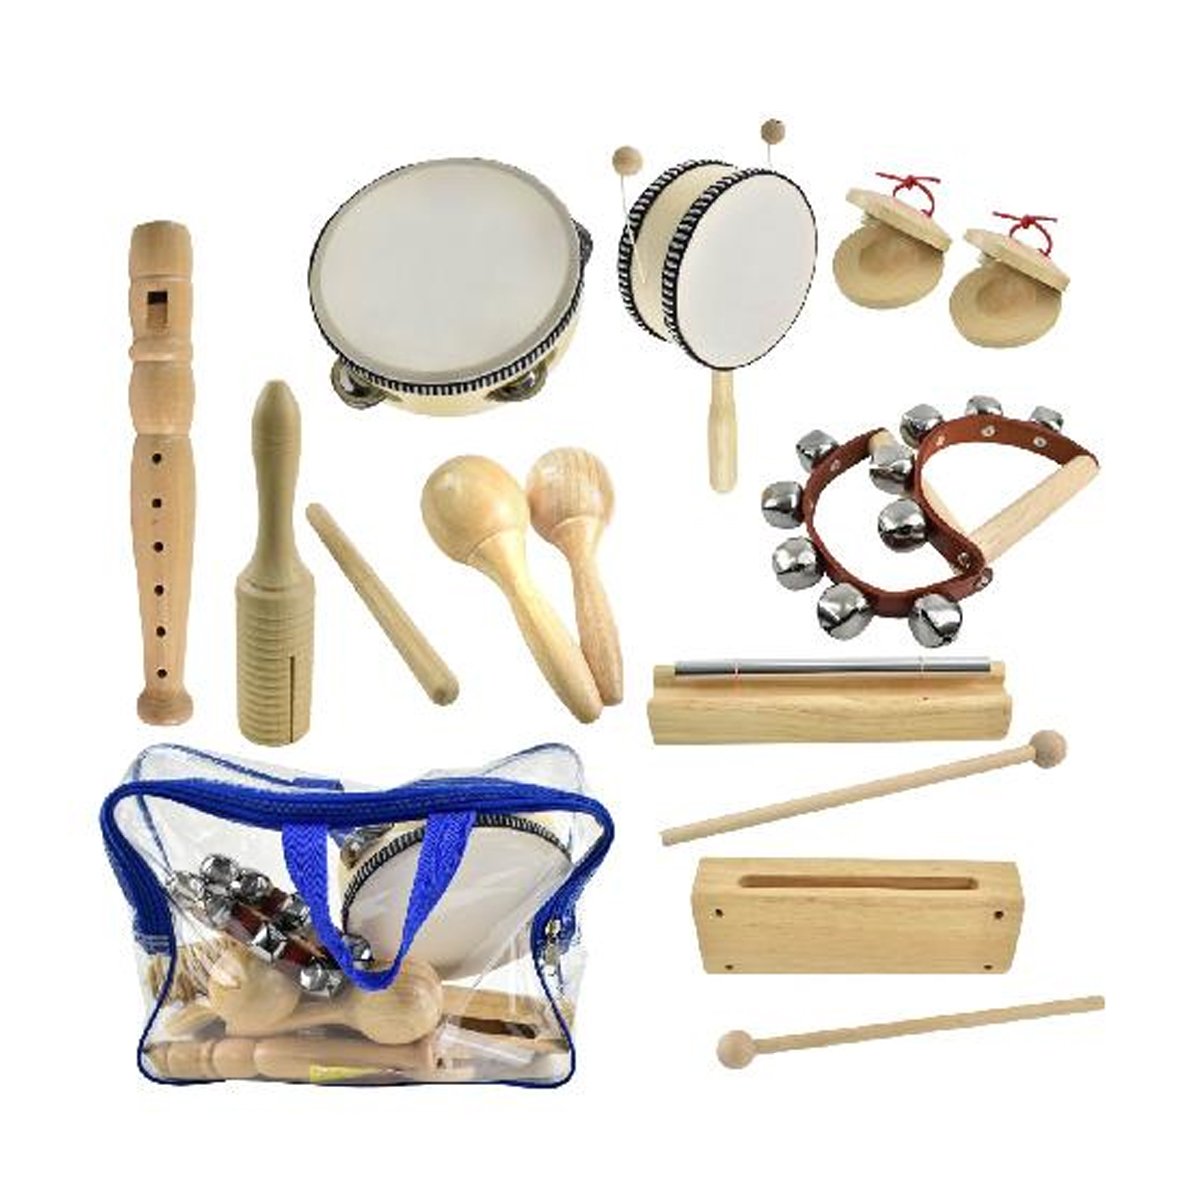 Juguetes infantiles - Instrumentos musicales: de construcción sencilla